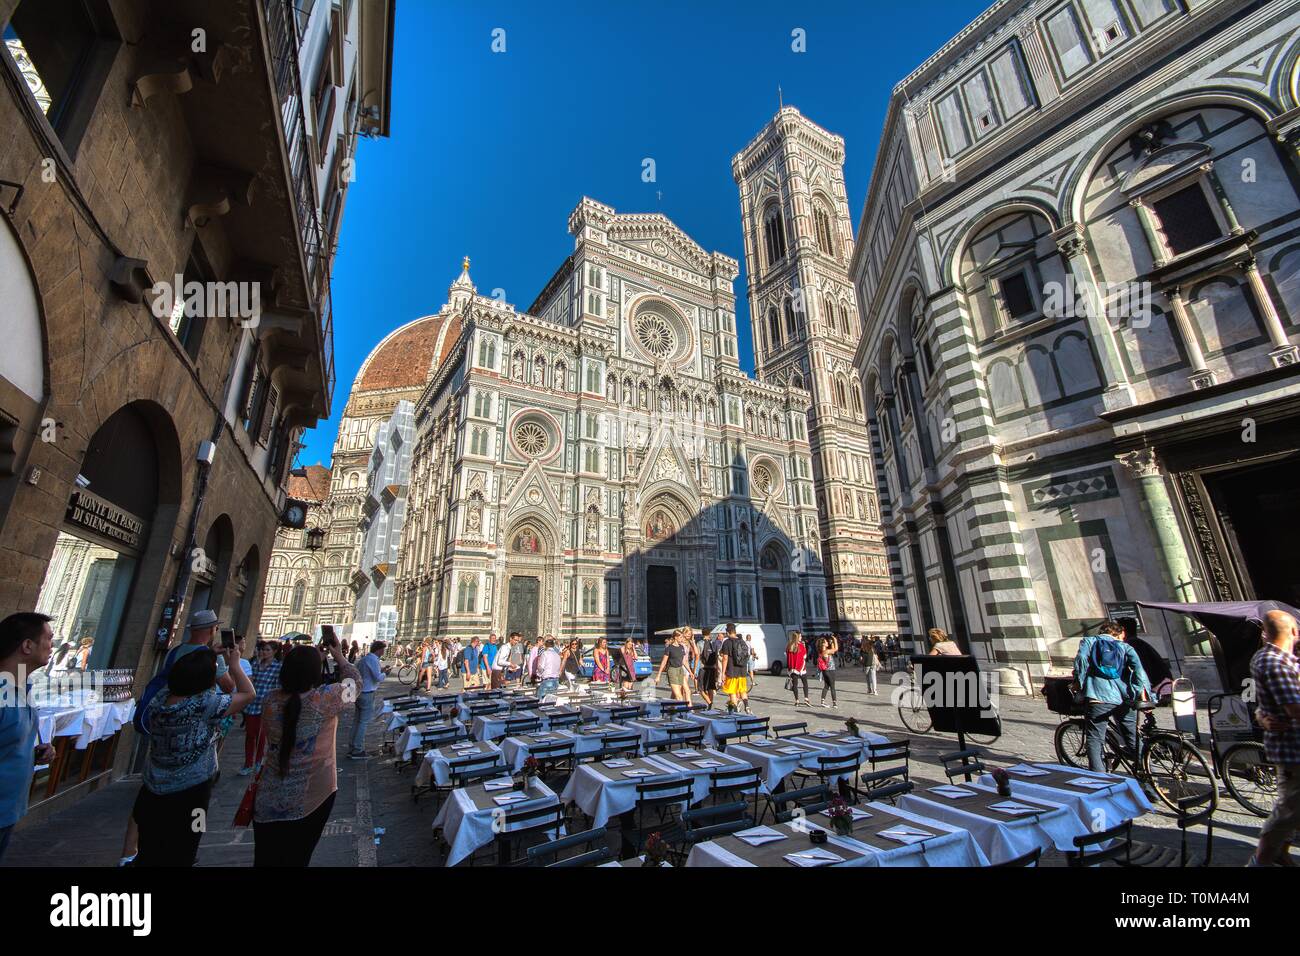 Cathédrale Santa Maria del Fiore, Duomo. Les italiens l'appellent Duomo. Les touristes de photographier la cathédrale. Banque D'Images